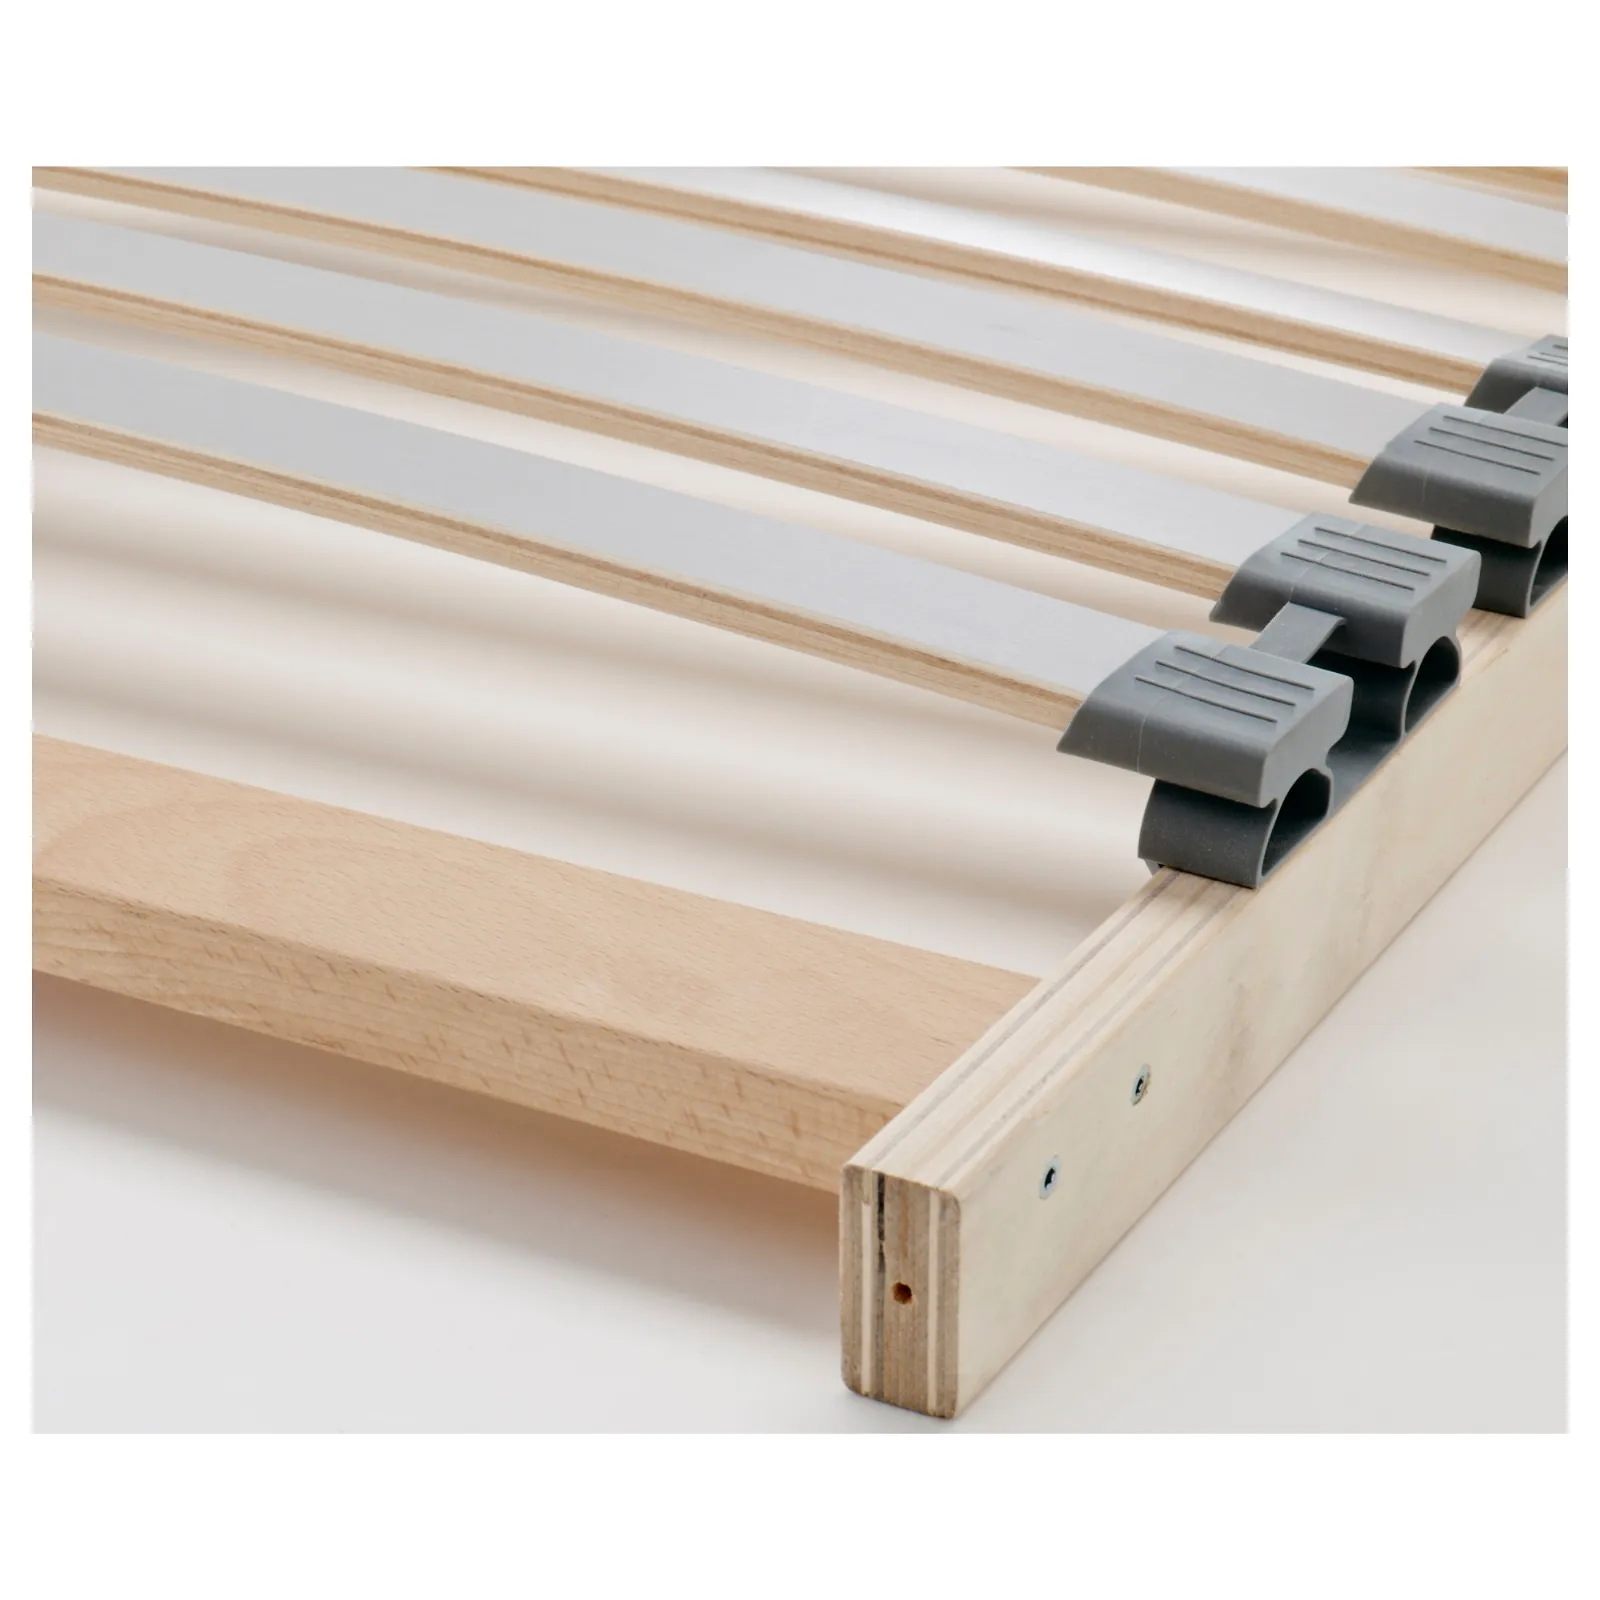 Ikea reti letto soluzioni su misura per ogni esigenza for Arredamento centro estetico ikea